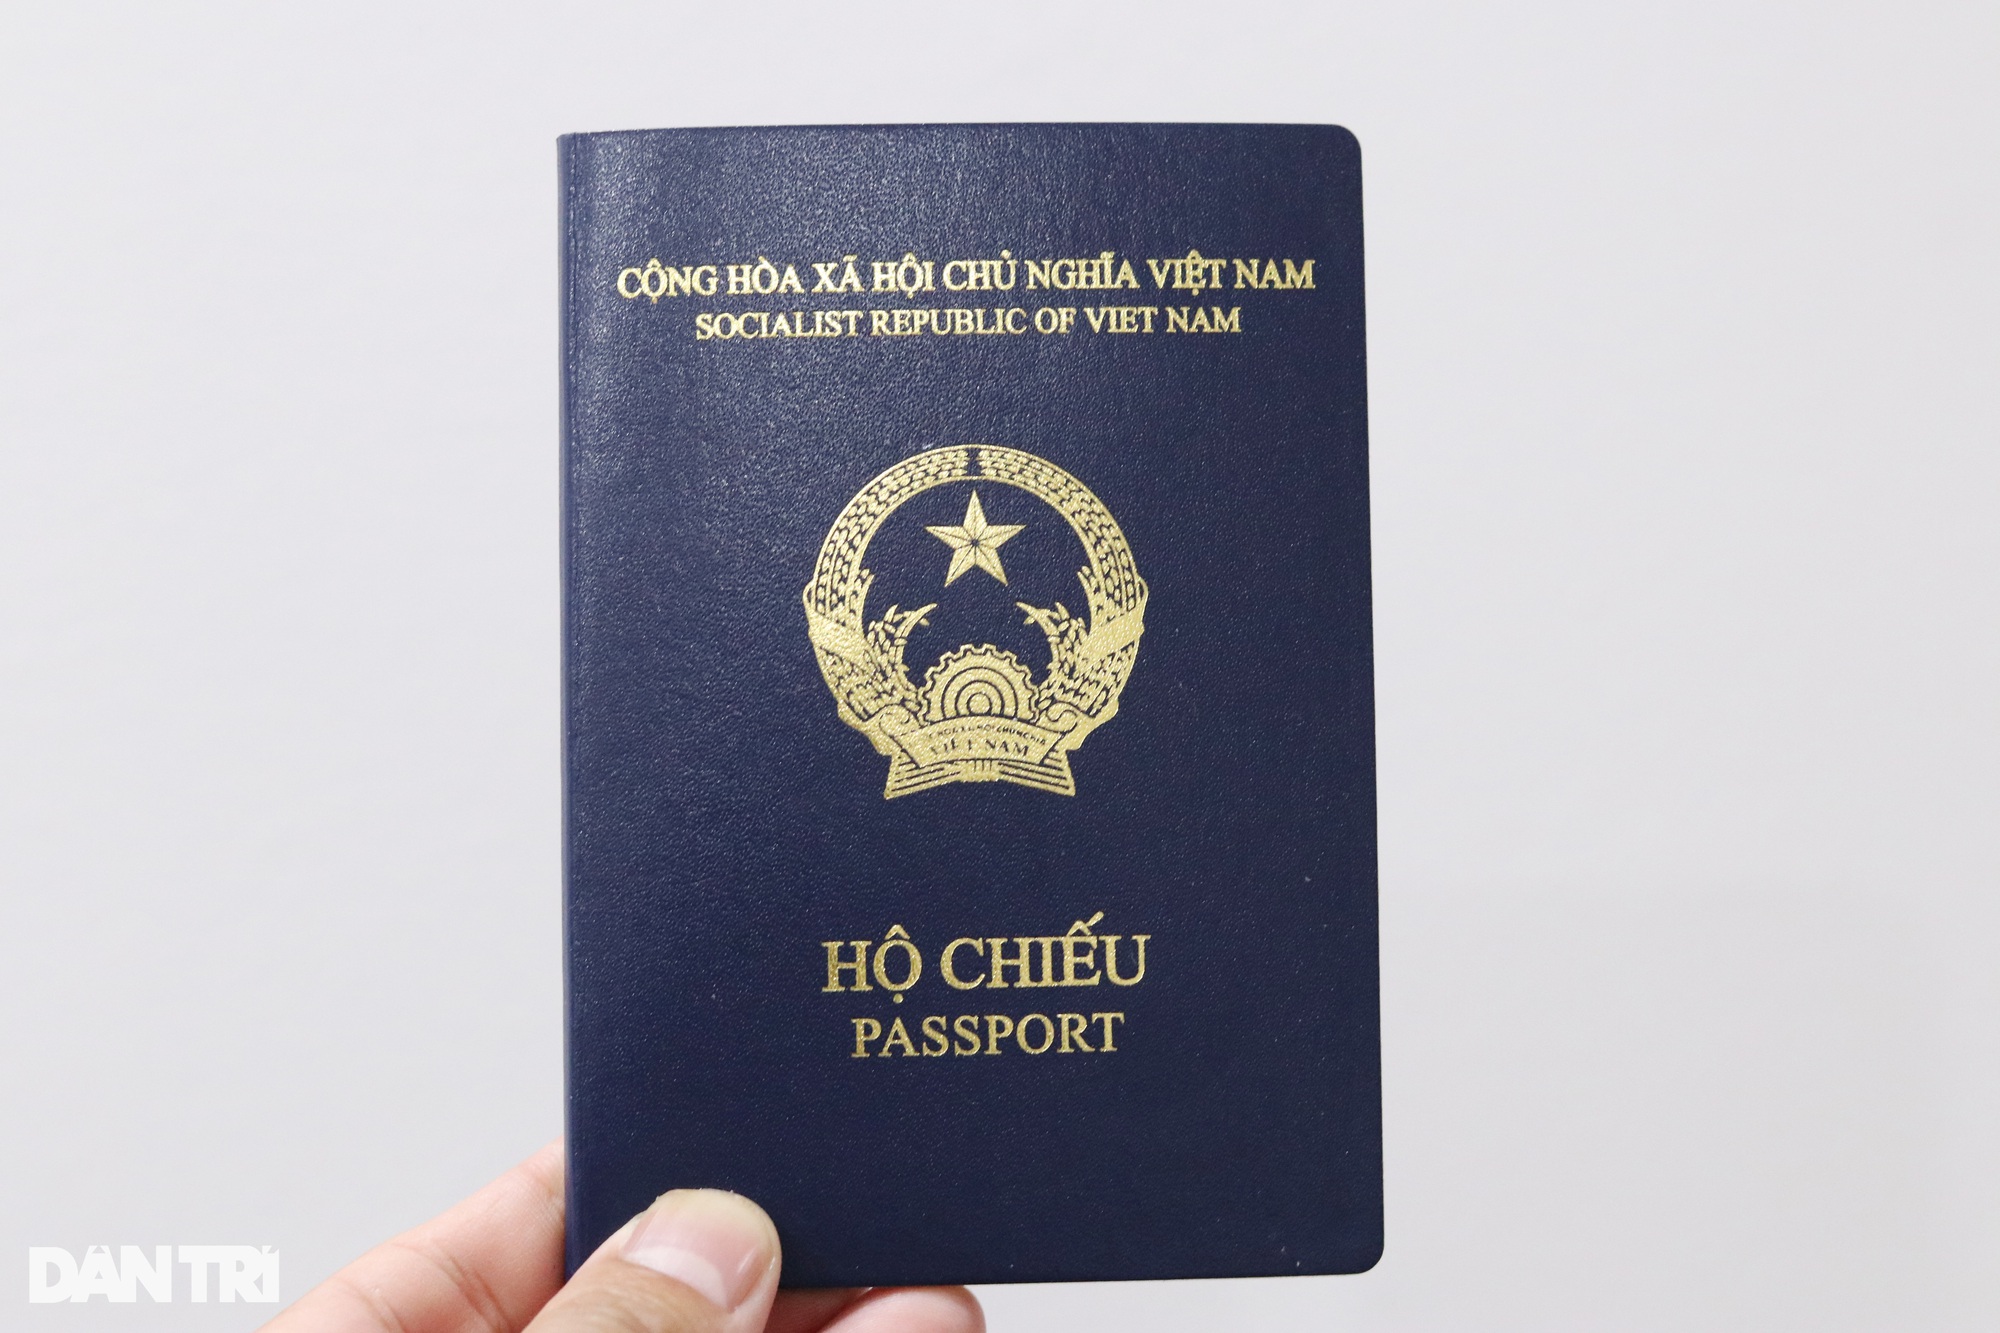 Nơi sinh: Bạn có biết rằng nơi sinh của mình có thể ảnh hưởng đến việc làm hộ chiếu? Hãy xem hình ảnh liên quan để tìm hiểu thêm về quy trình làm hộ chiếu và những thông tin cần thiết để đảm bảo việc làm hộ chiếu diễn ra một cách thuận lợi.